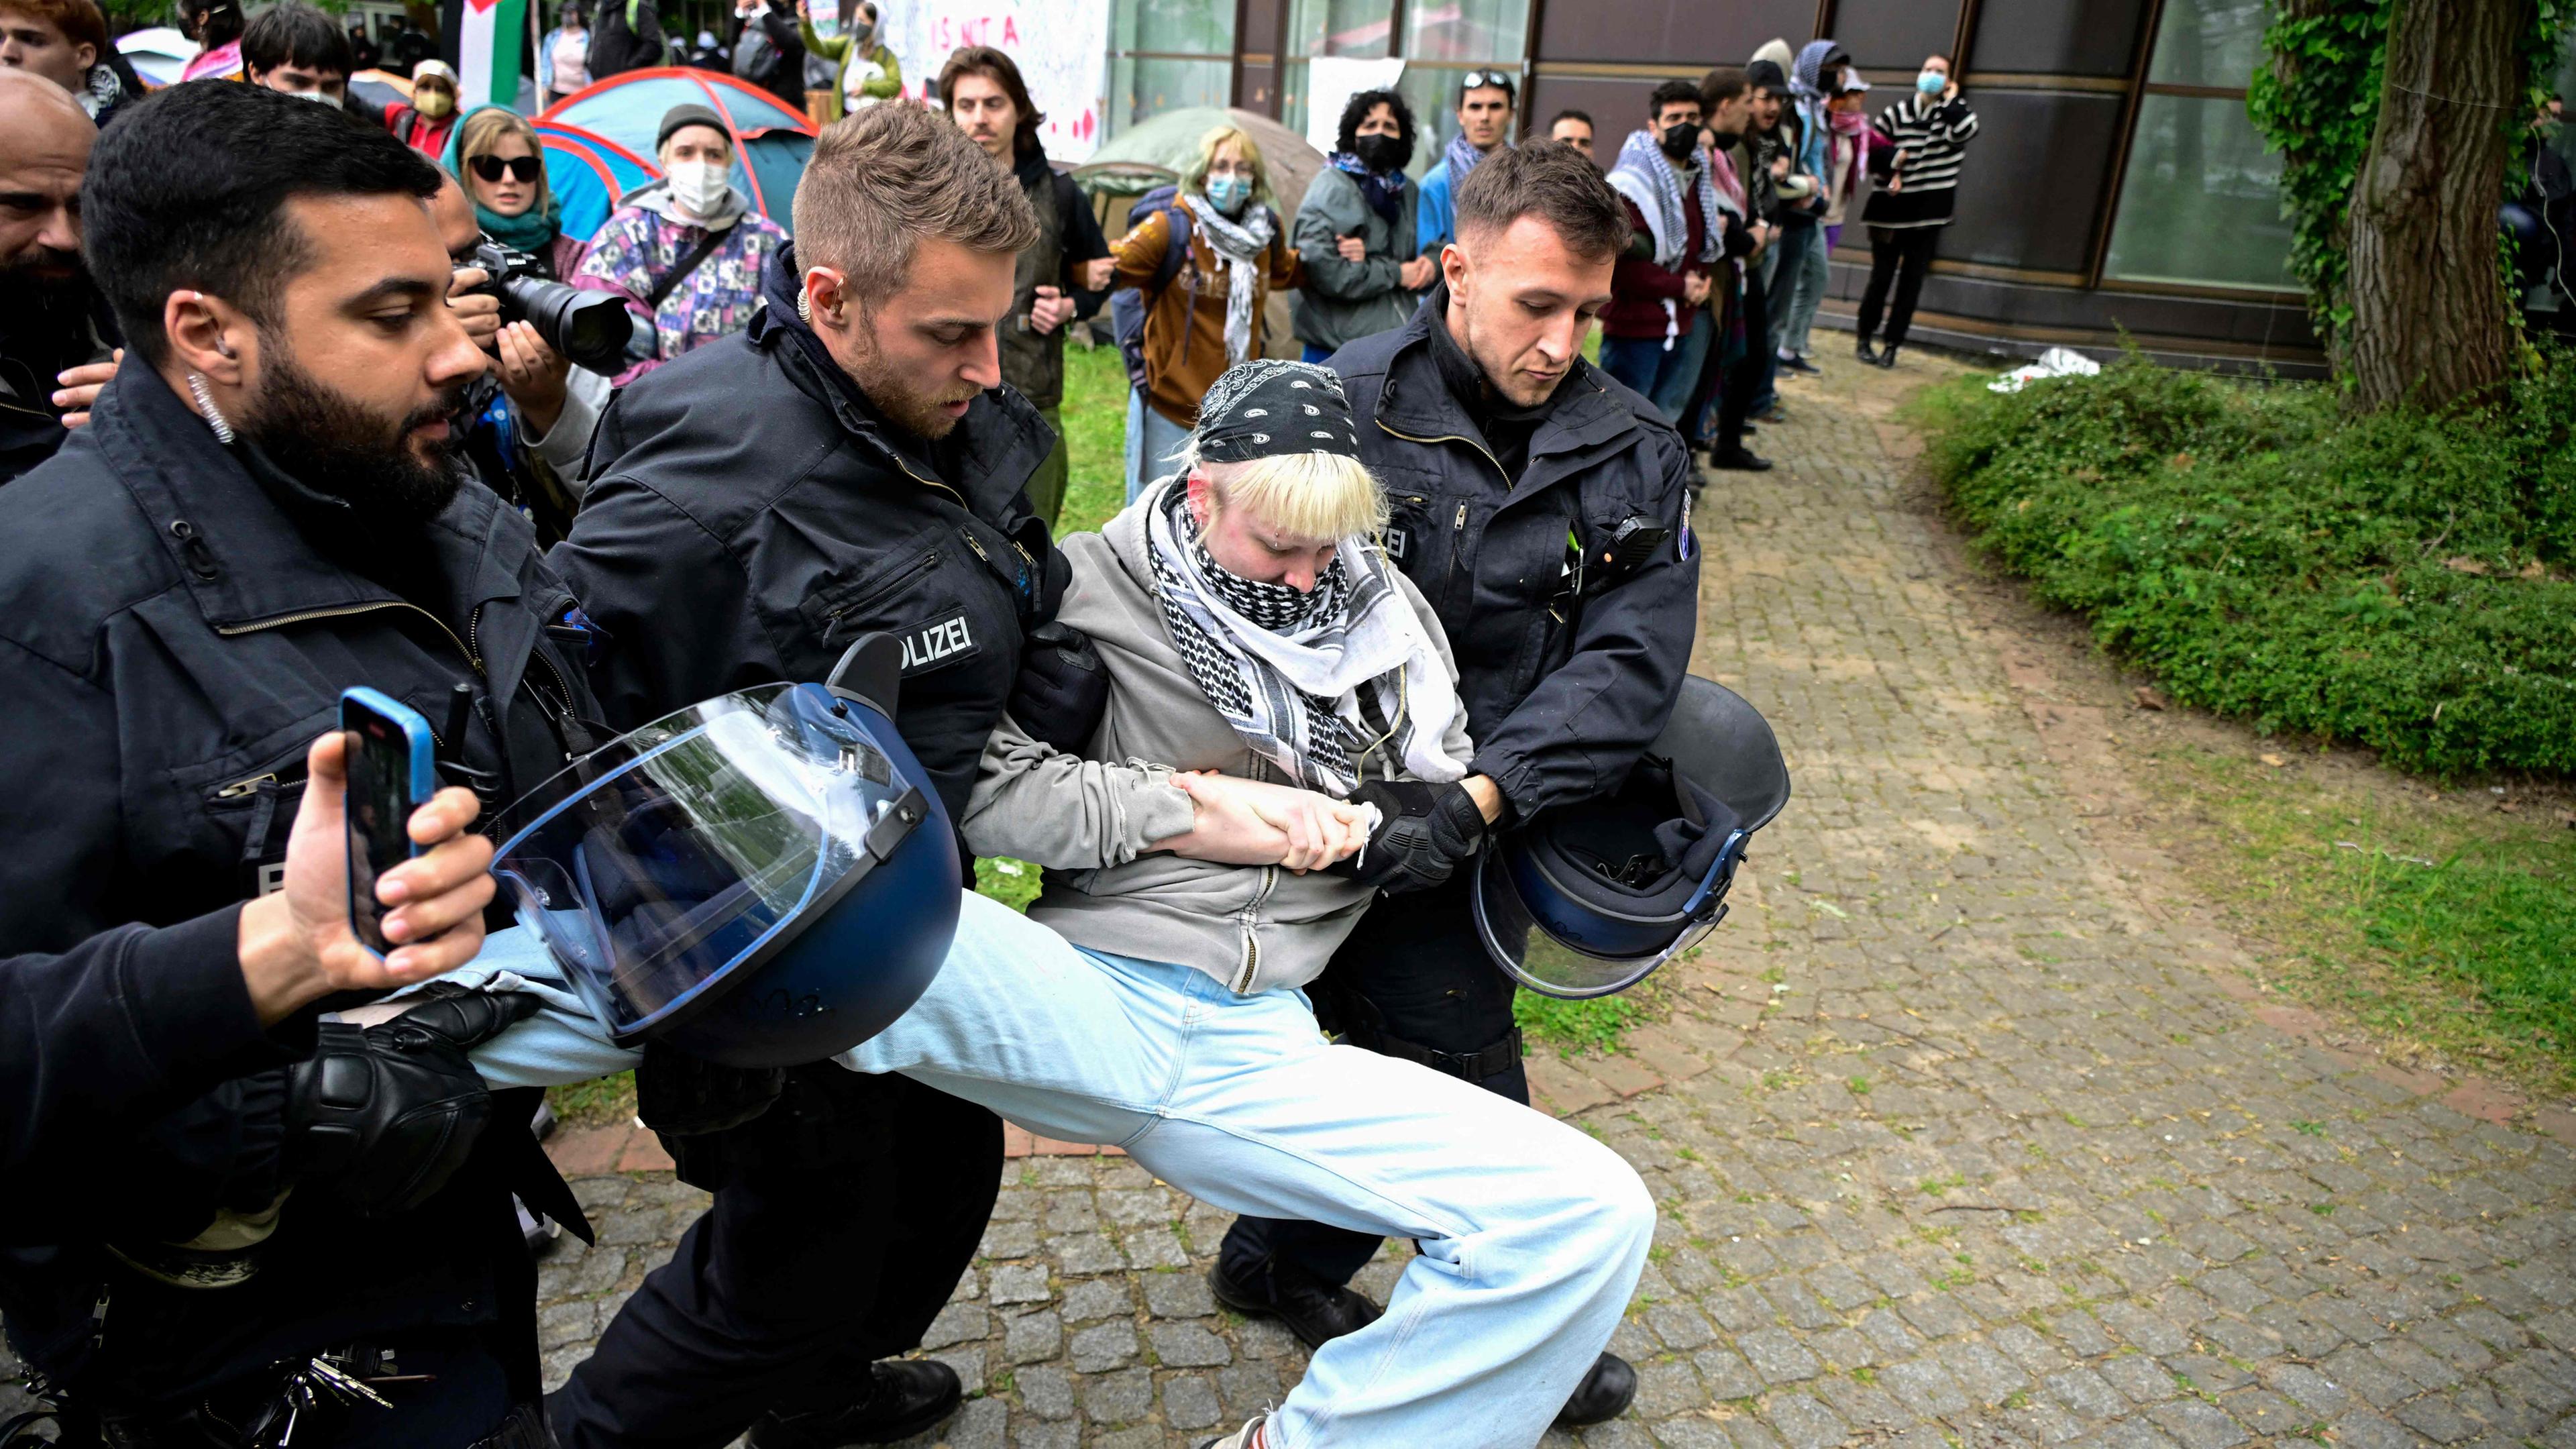 Protestcamp an der FU Berlin wird von der polizei geräumt